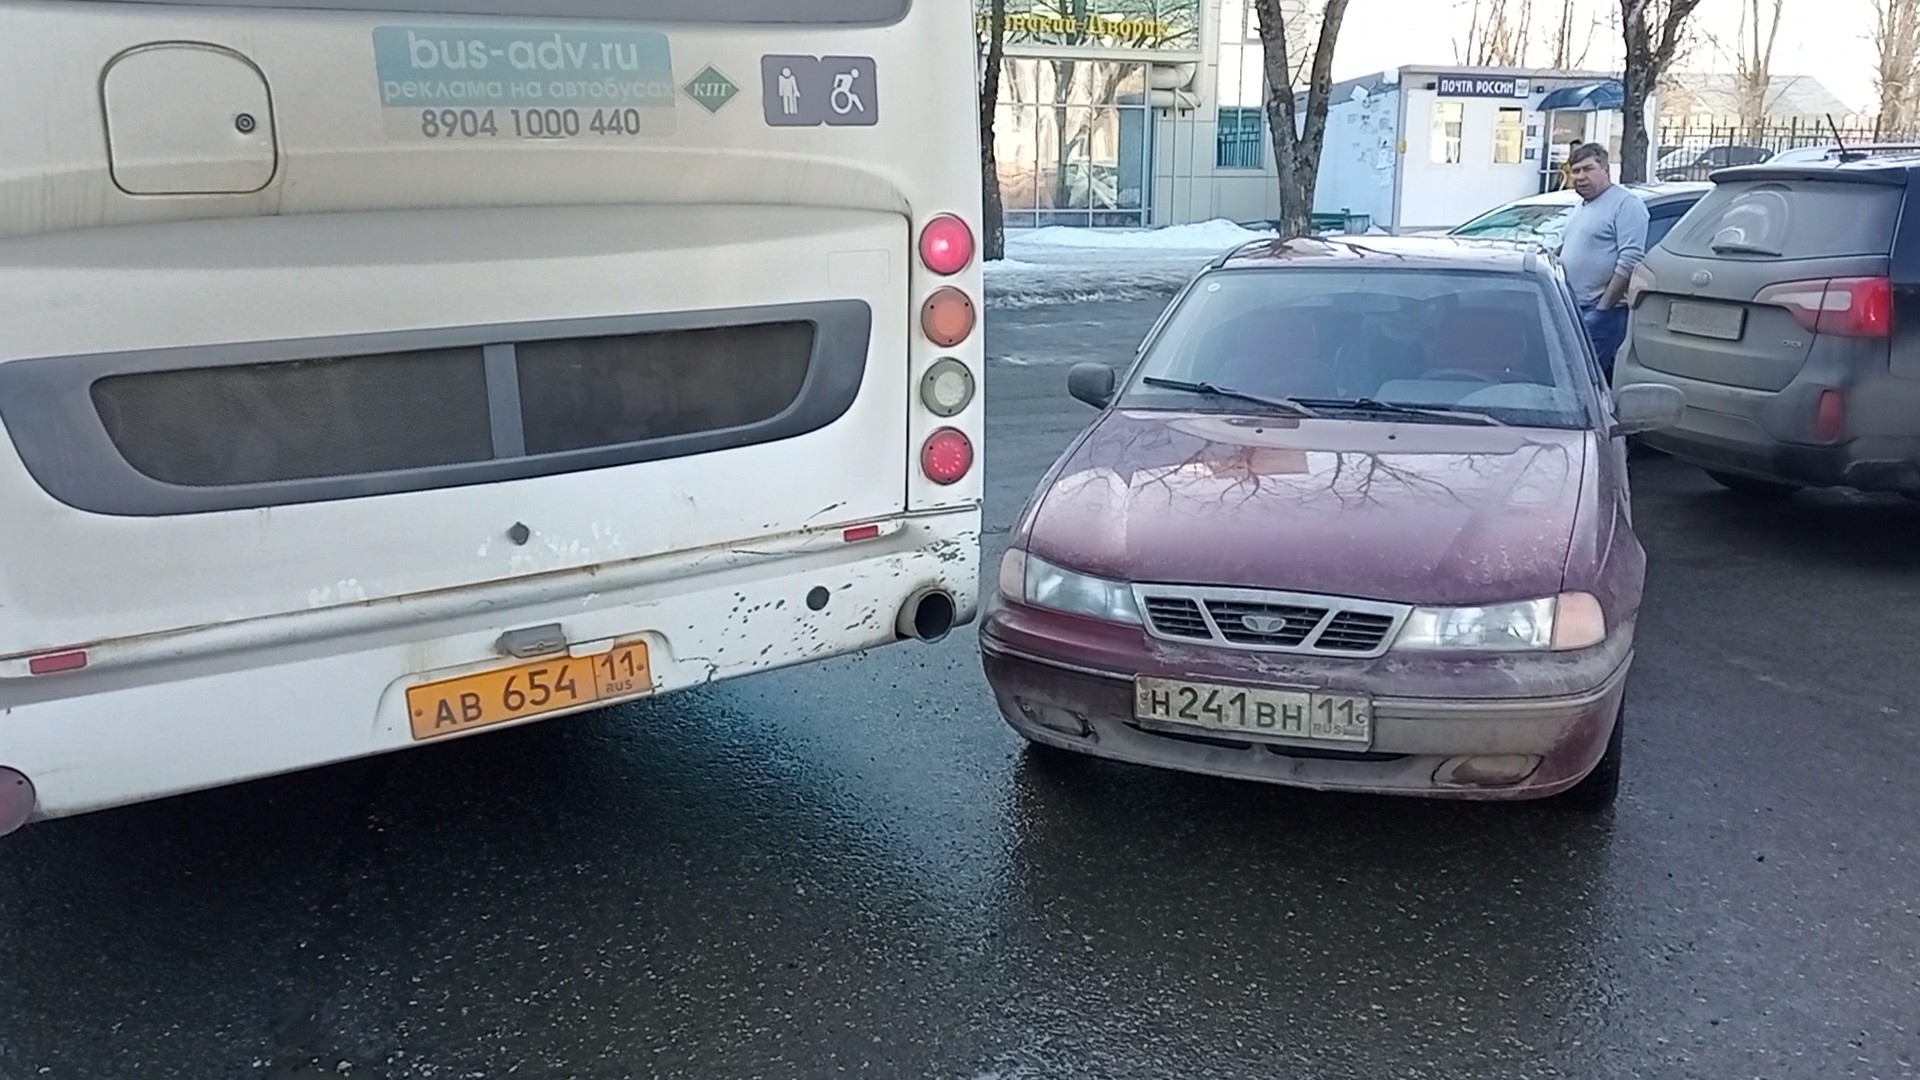 Прибытие чиновников спровоцировало ДТП с автобусом на железнодорожном вокзале в Сыктывкаре